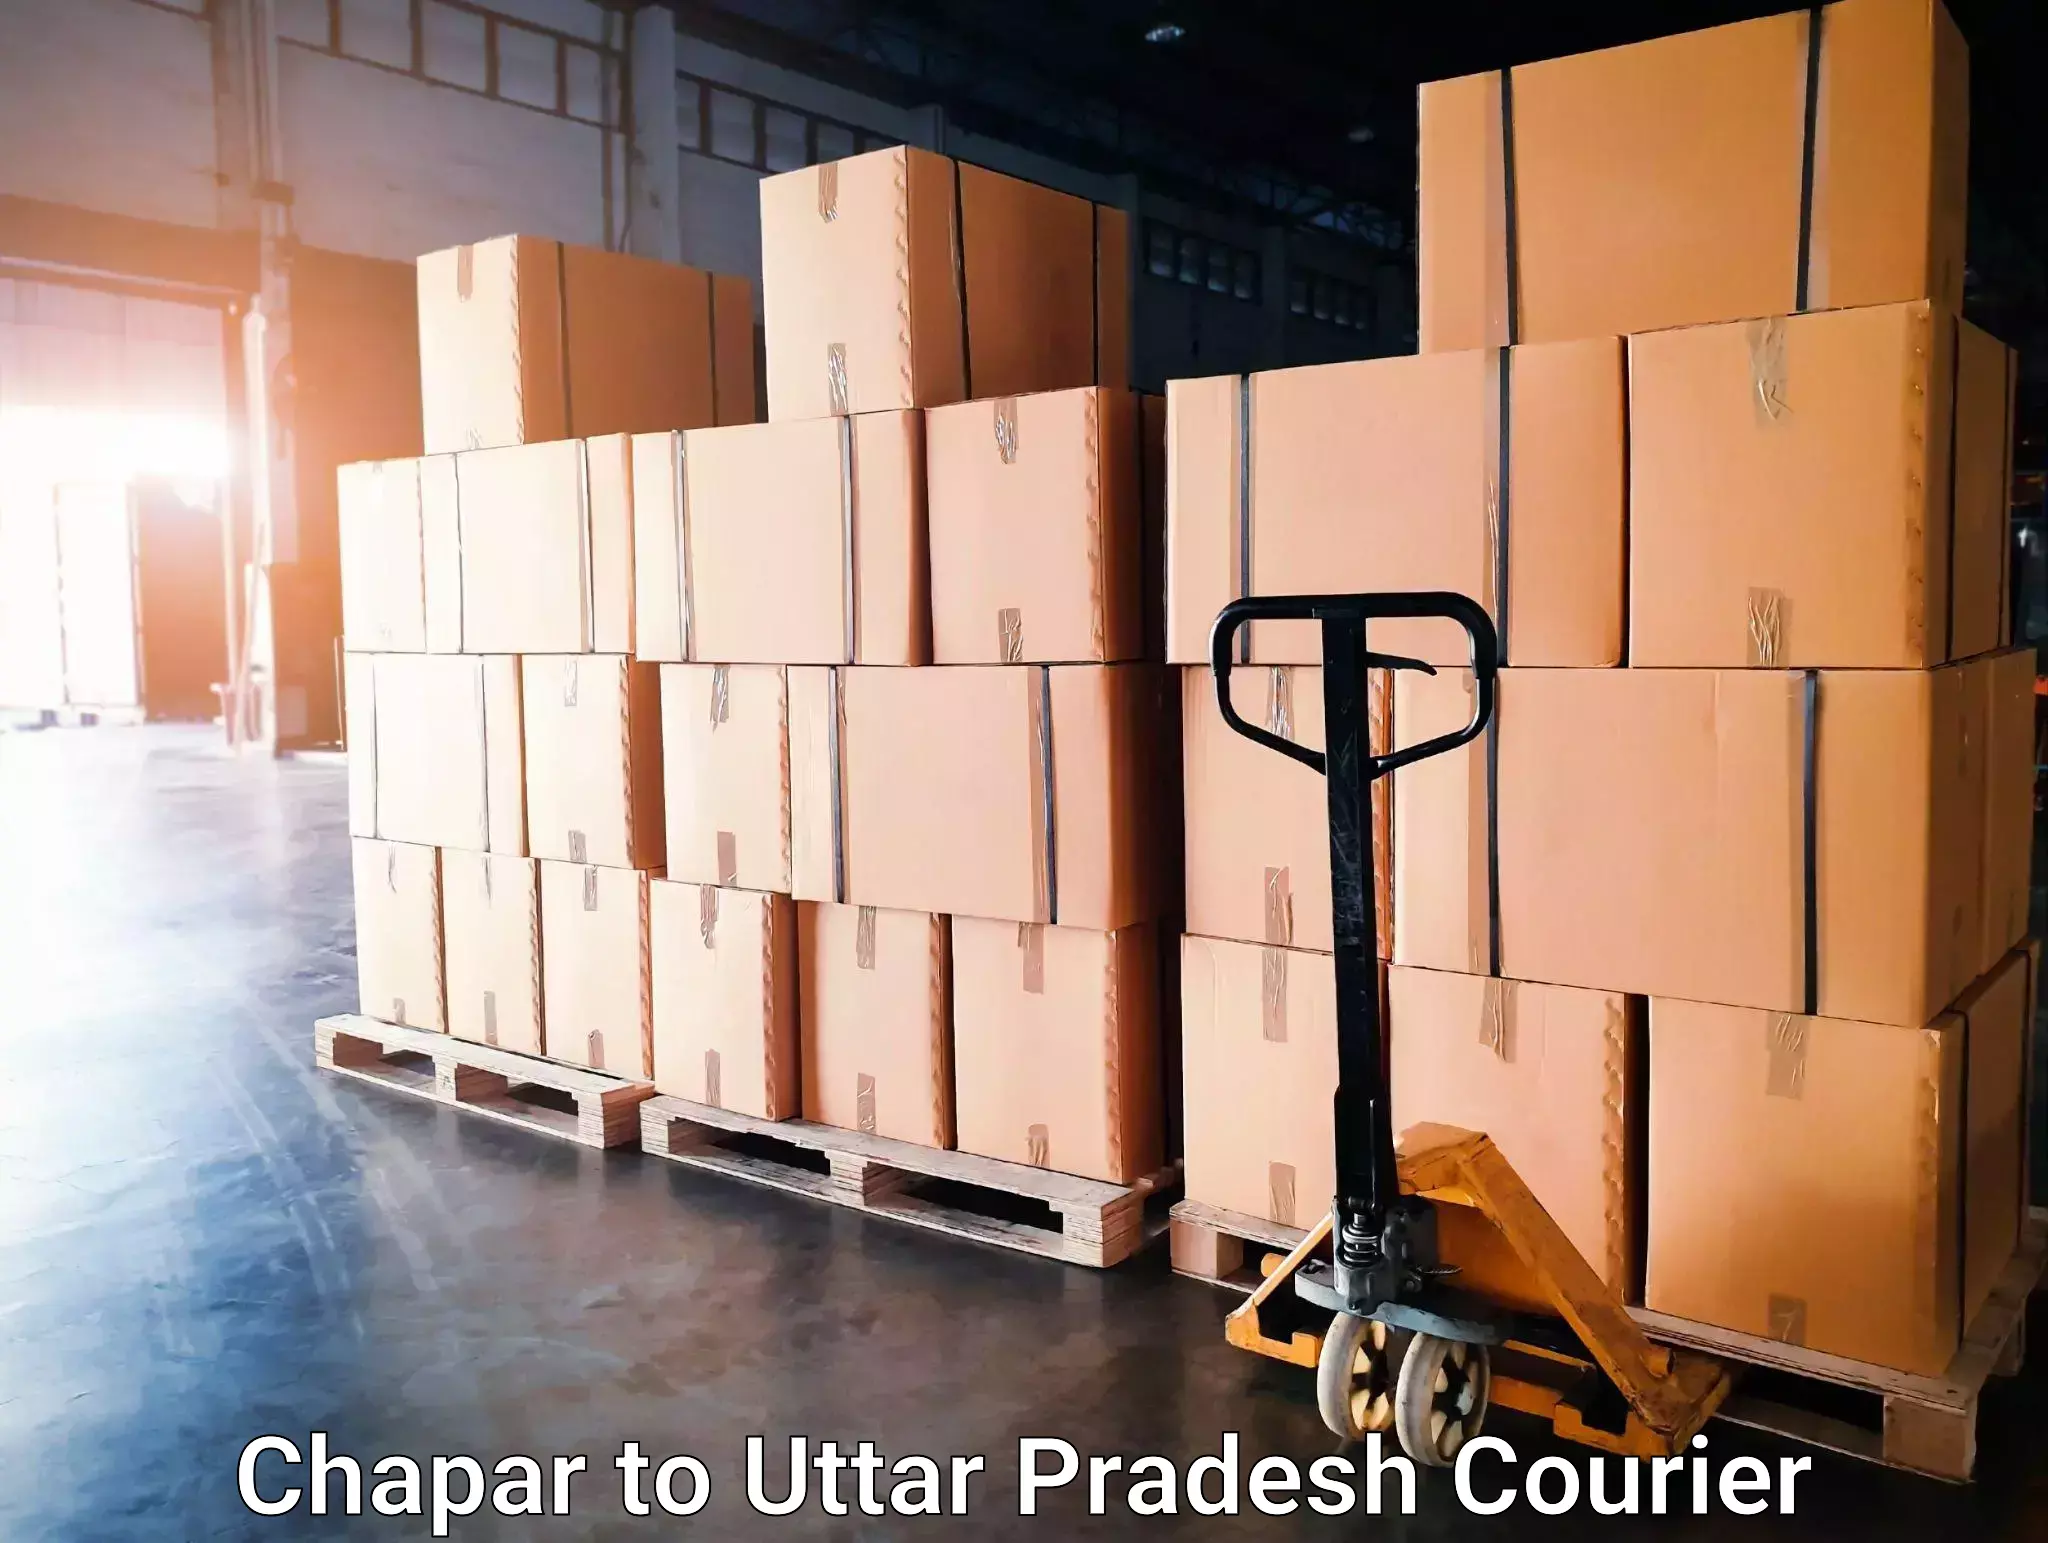 Full-service courier options Chapar to Mungra Badshahpur